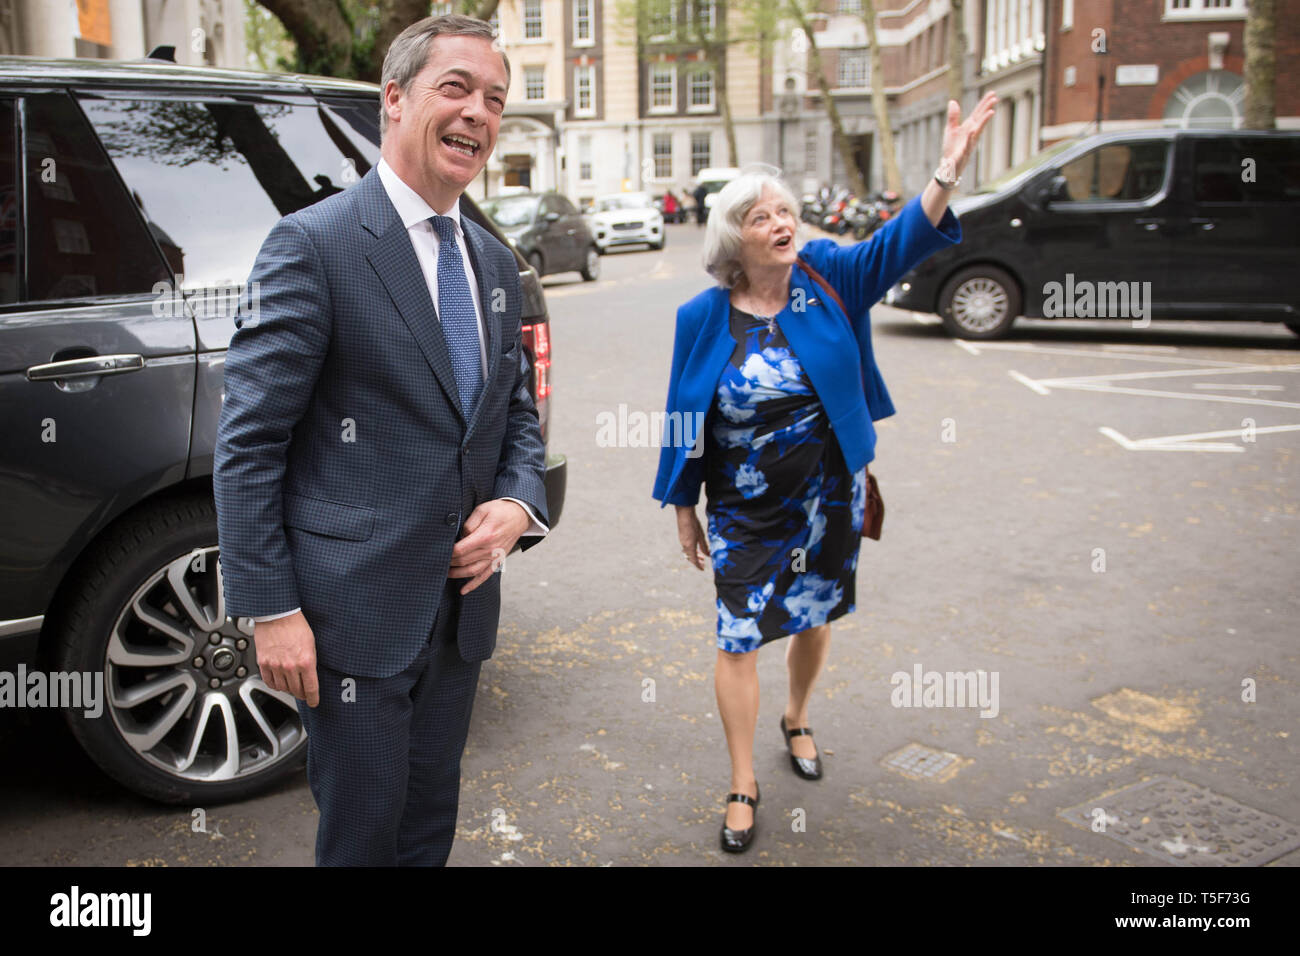 Führer der Partei Brexit Nigel Farage mit ehemaligen Tory minister Ann Widdecombe, die von den Konservativen Bruised die Brexit Partei, in Westminster, London zu verbinden hat. Stockfoto